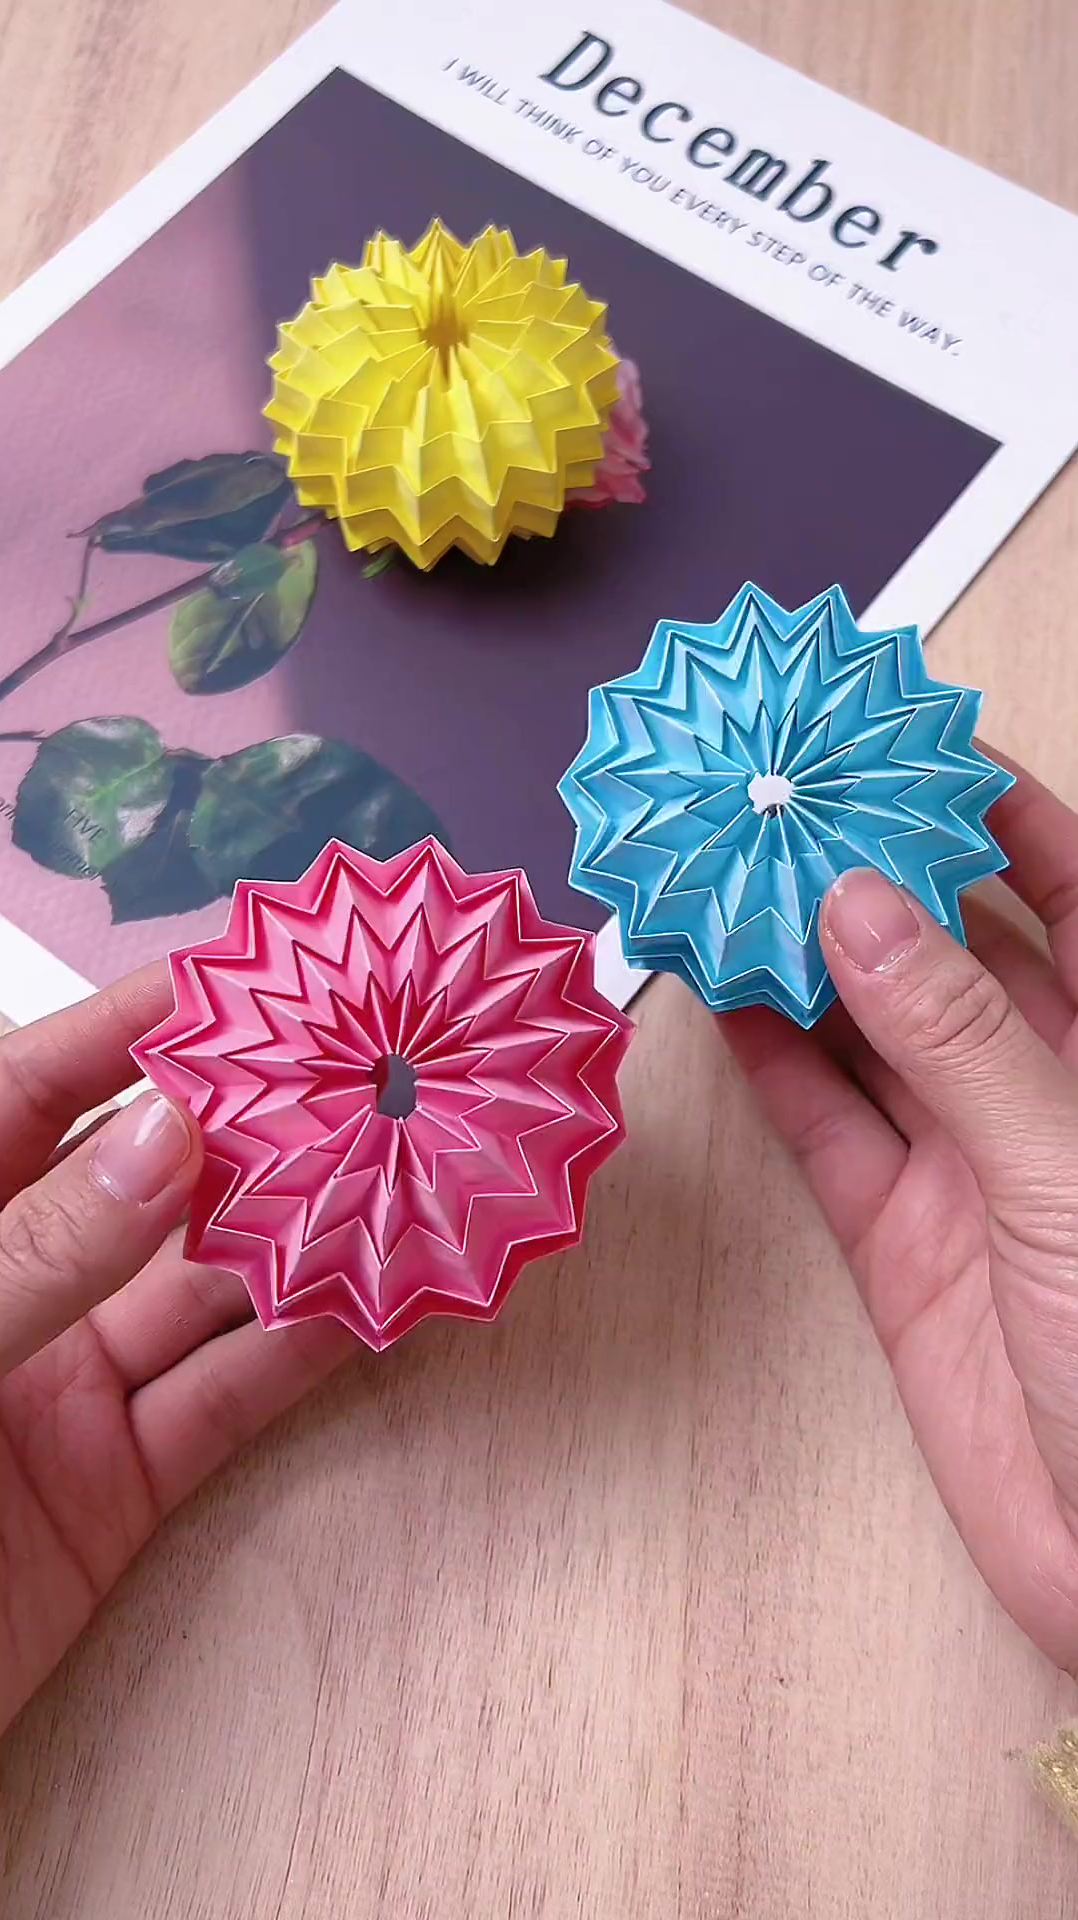 解压玩具自制简单折纸图片